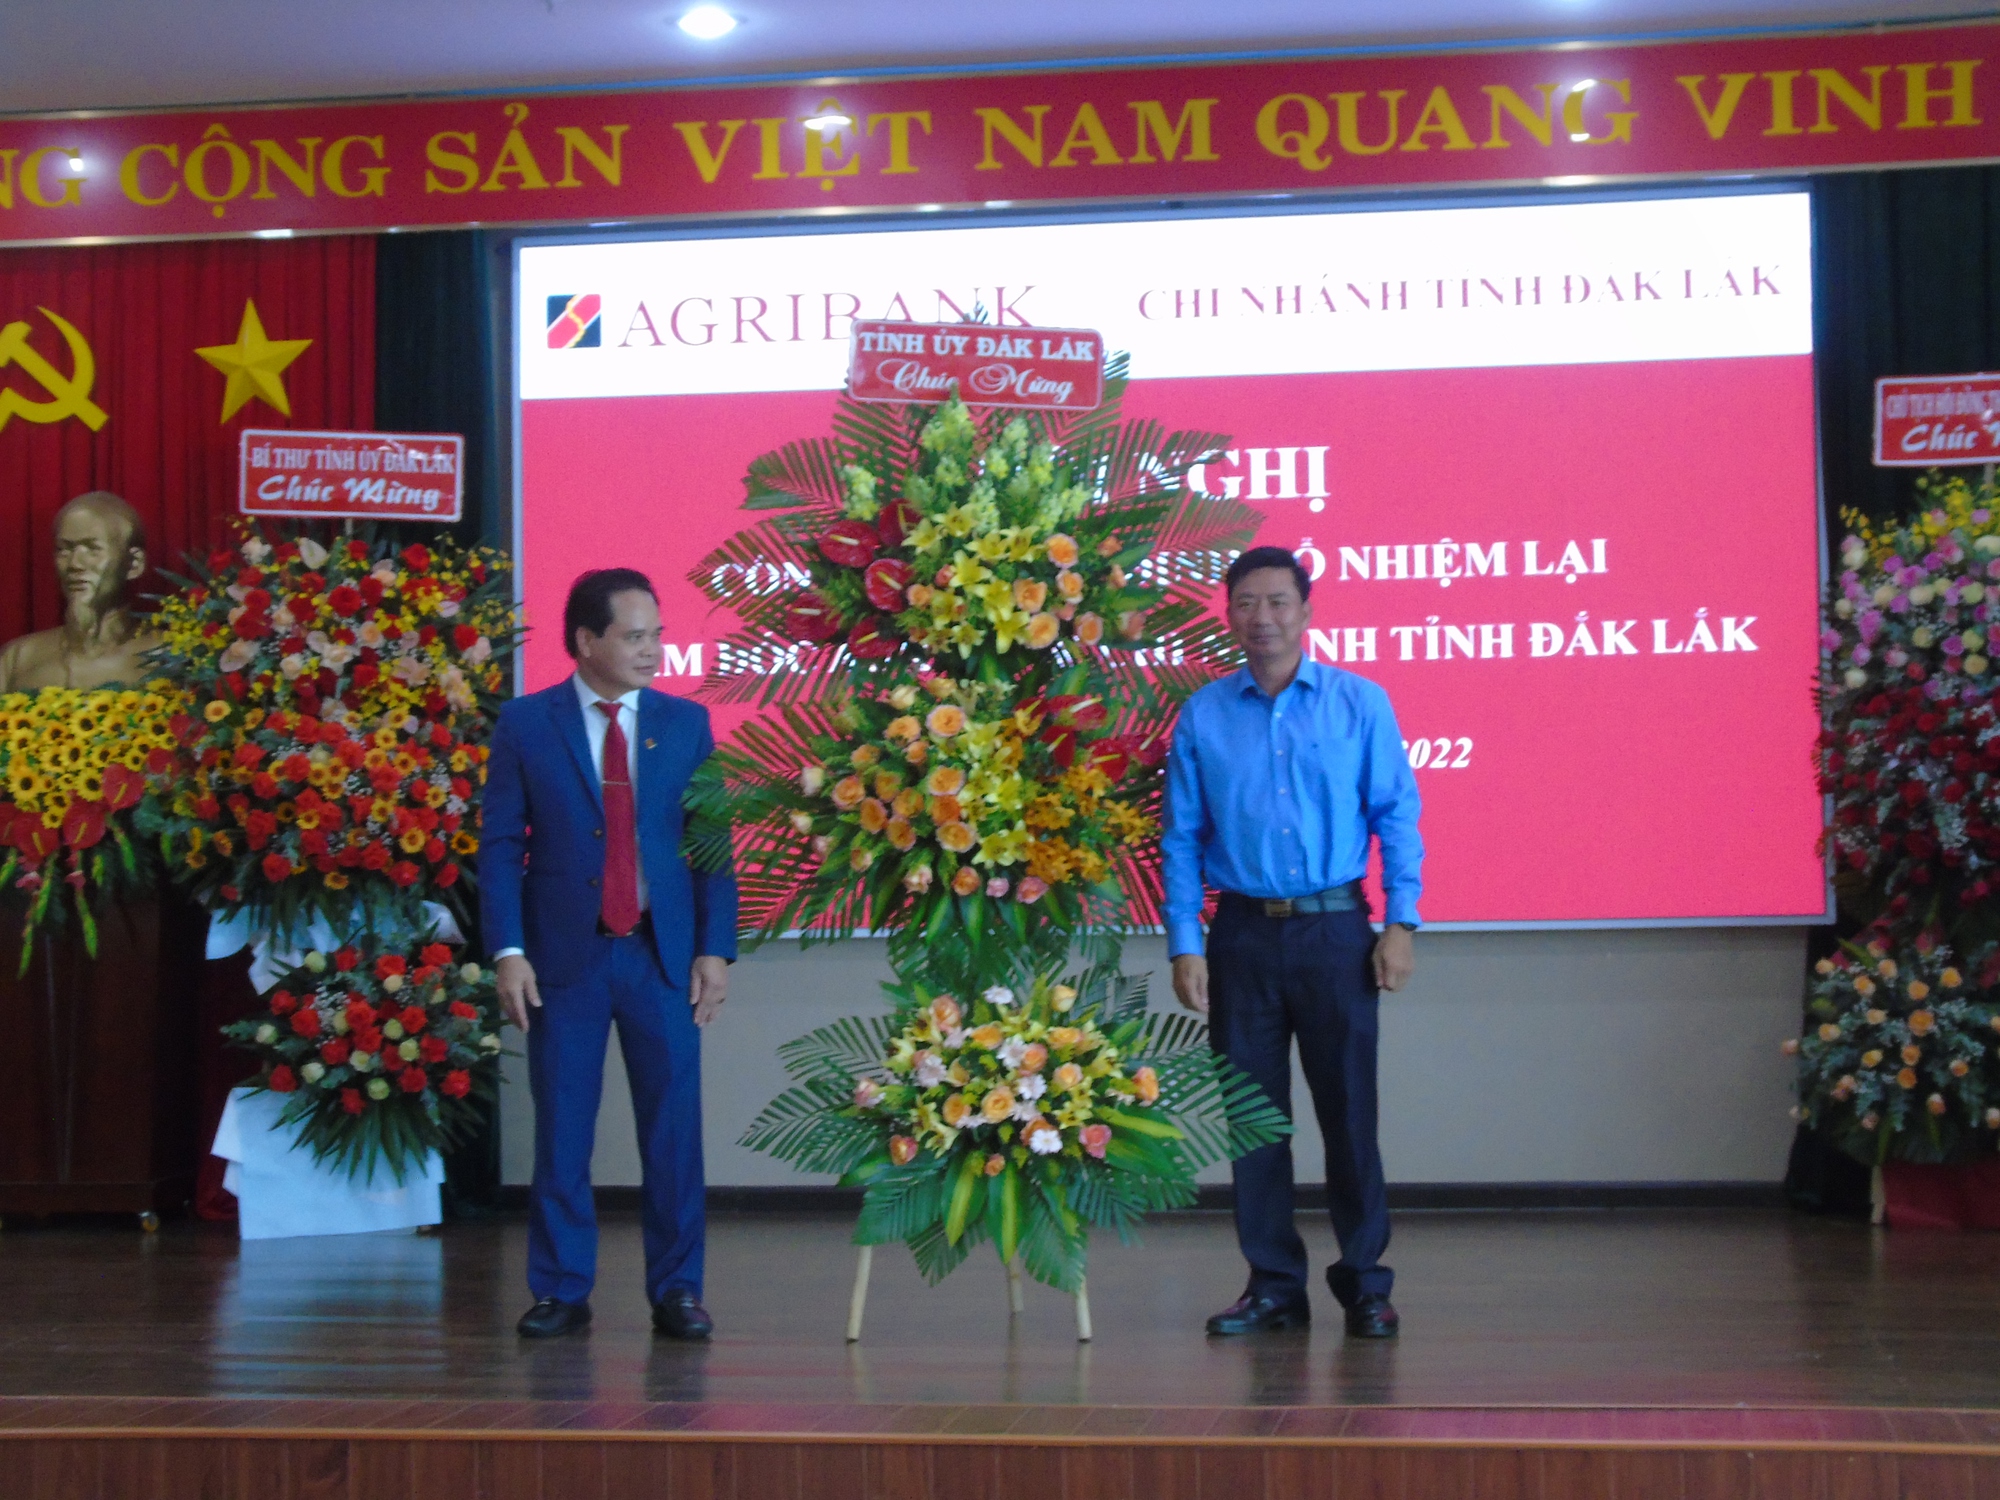 Ông Vương Hồng Lĩnh được bổ nhiệm lại chức vụ Giám đốc Agribank Chi nhánh tỉnh Đắk Lắk - Ảnh 3.